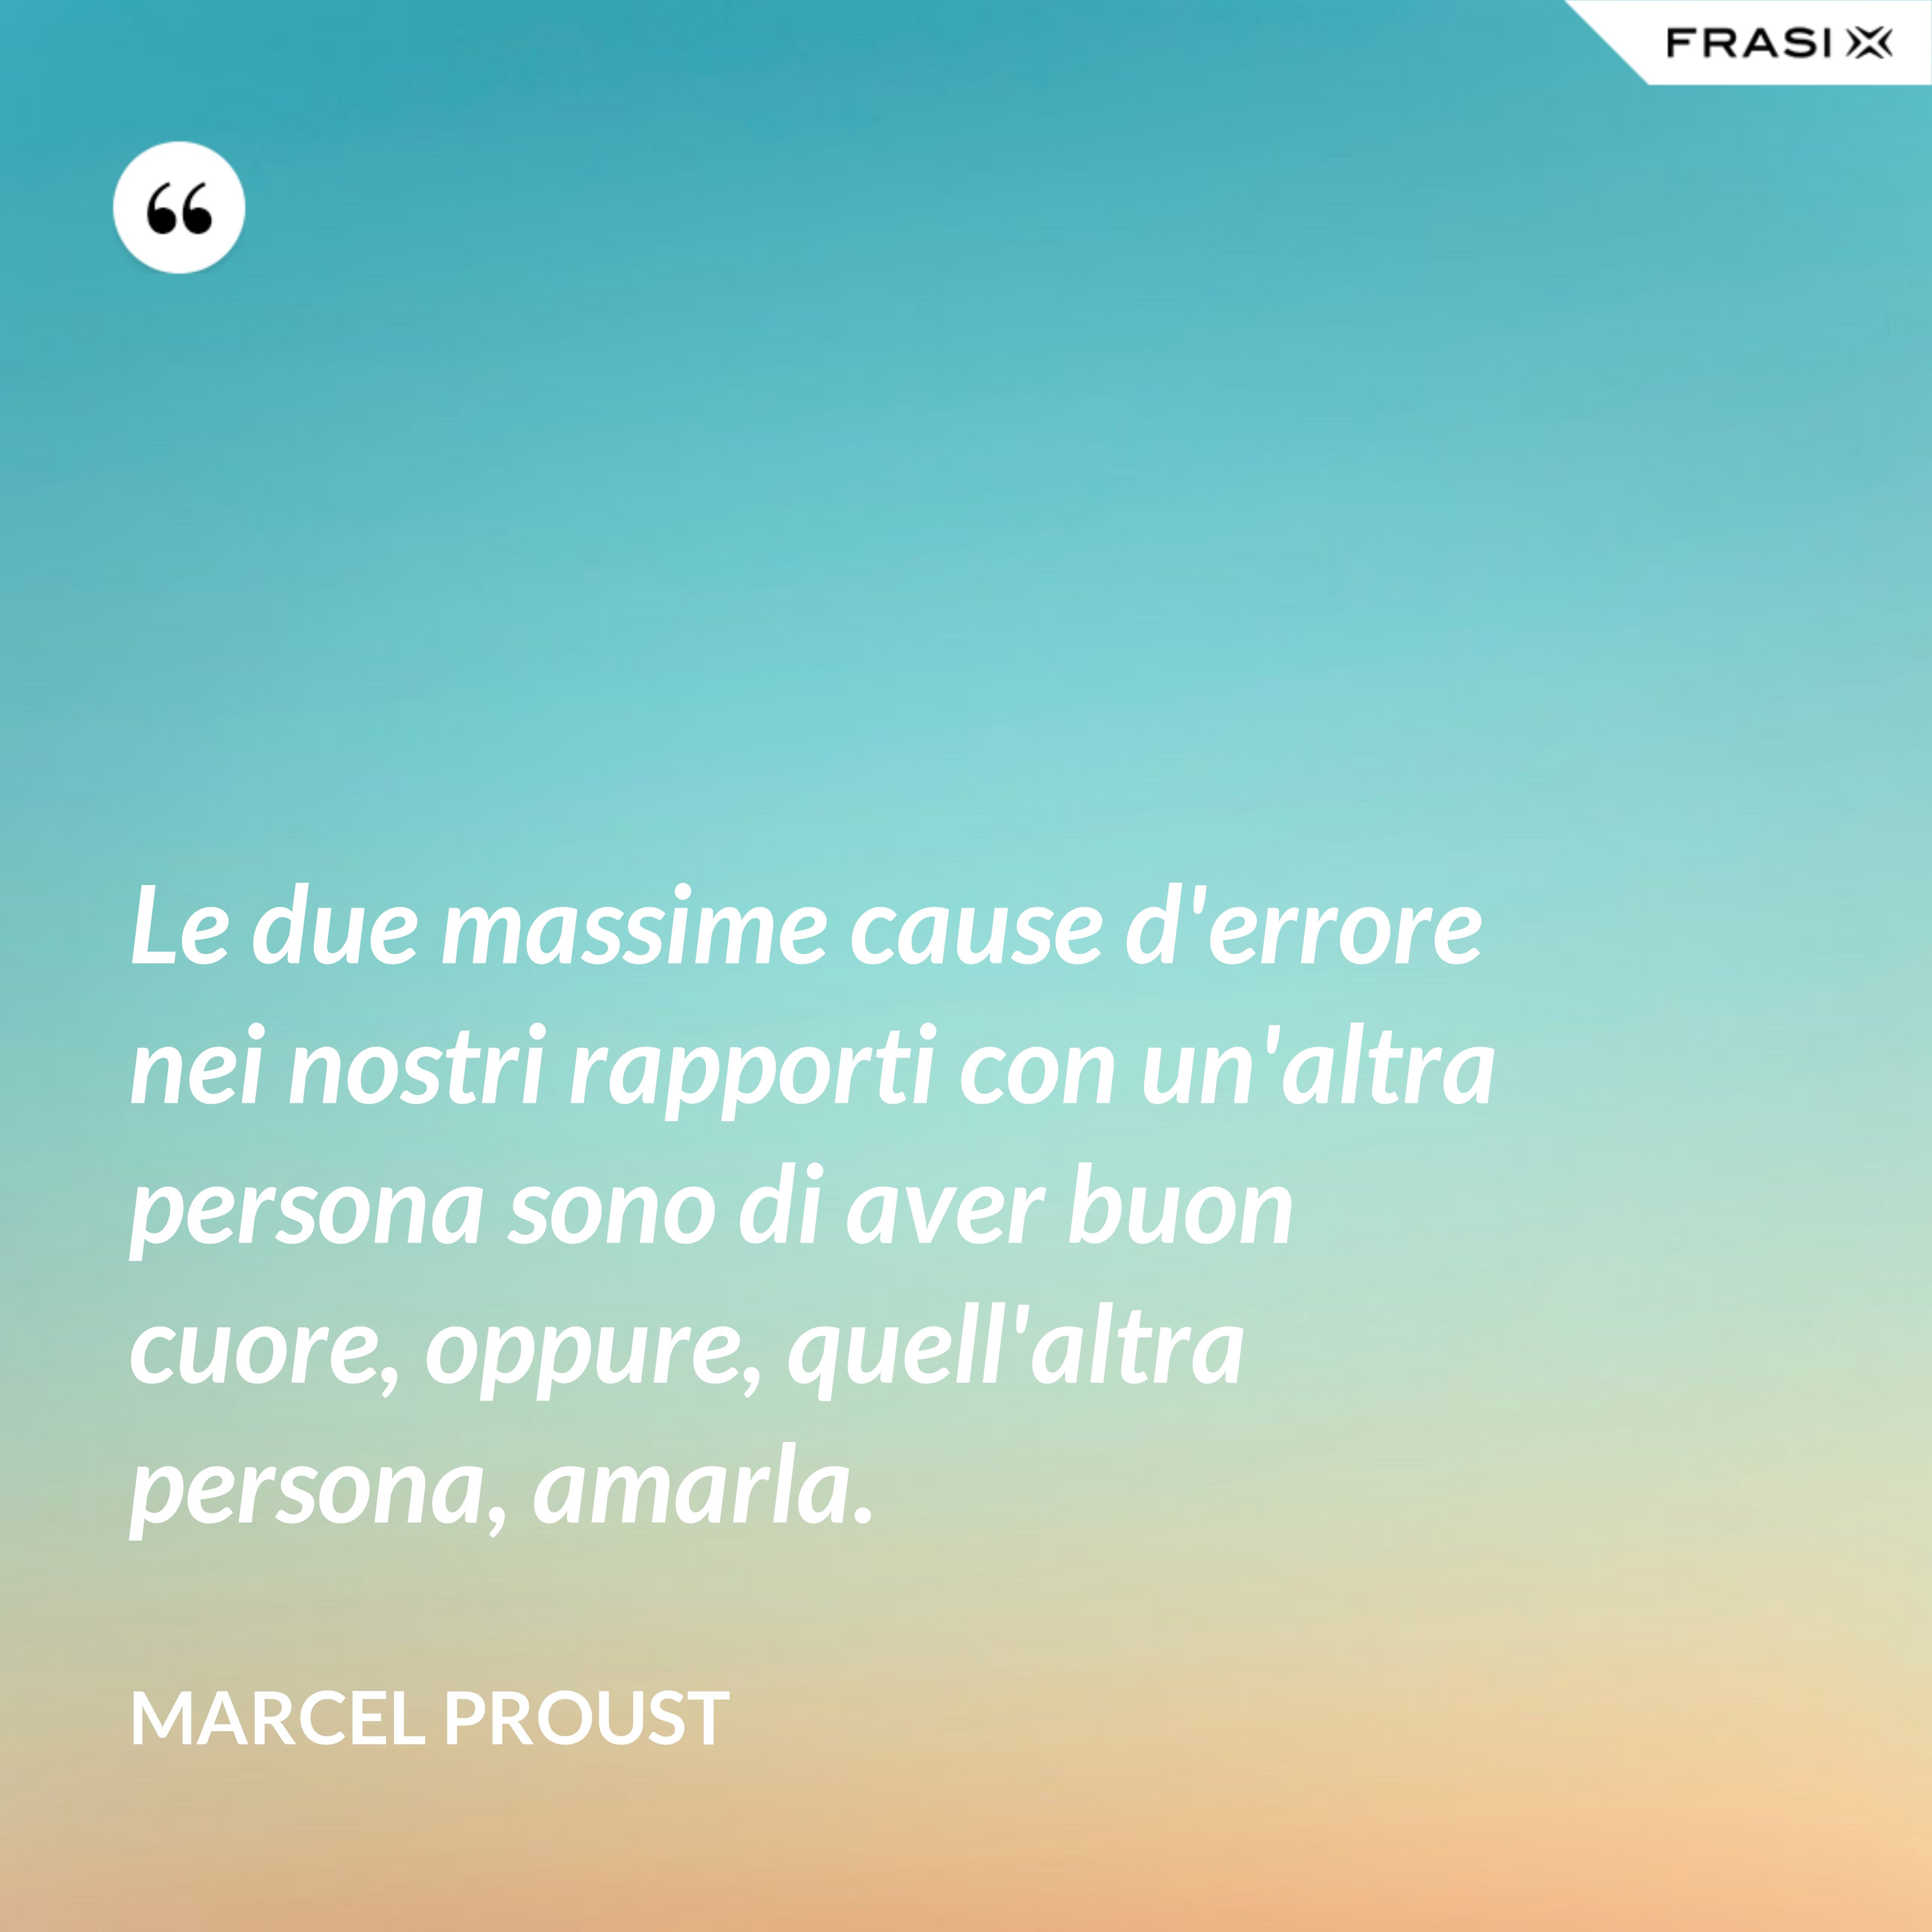 Le due massime cause d'errore nei nostri rapporti con un'altra persona sono di aver buon cuore, oppure, quell'altra persona, amarla. - Marcel Proust